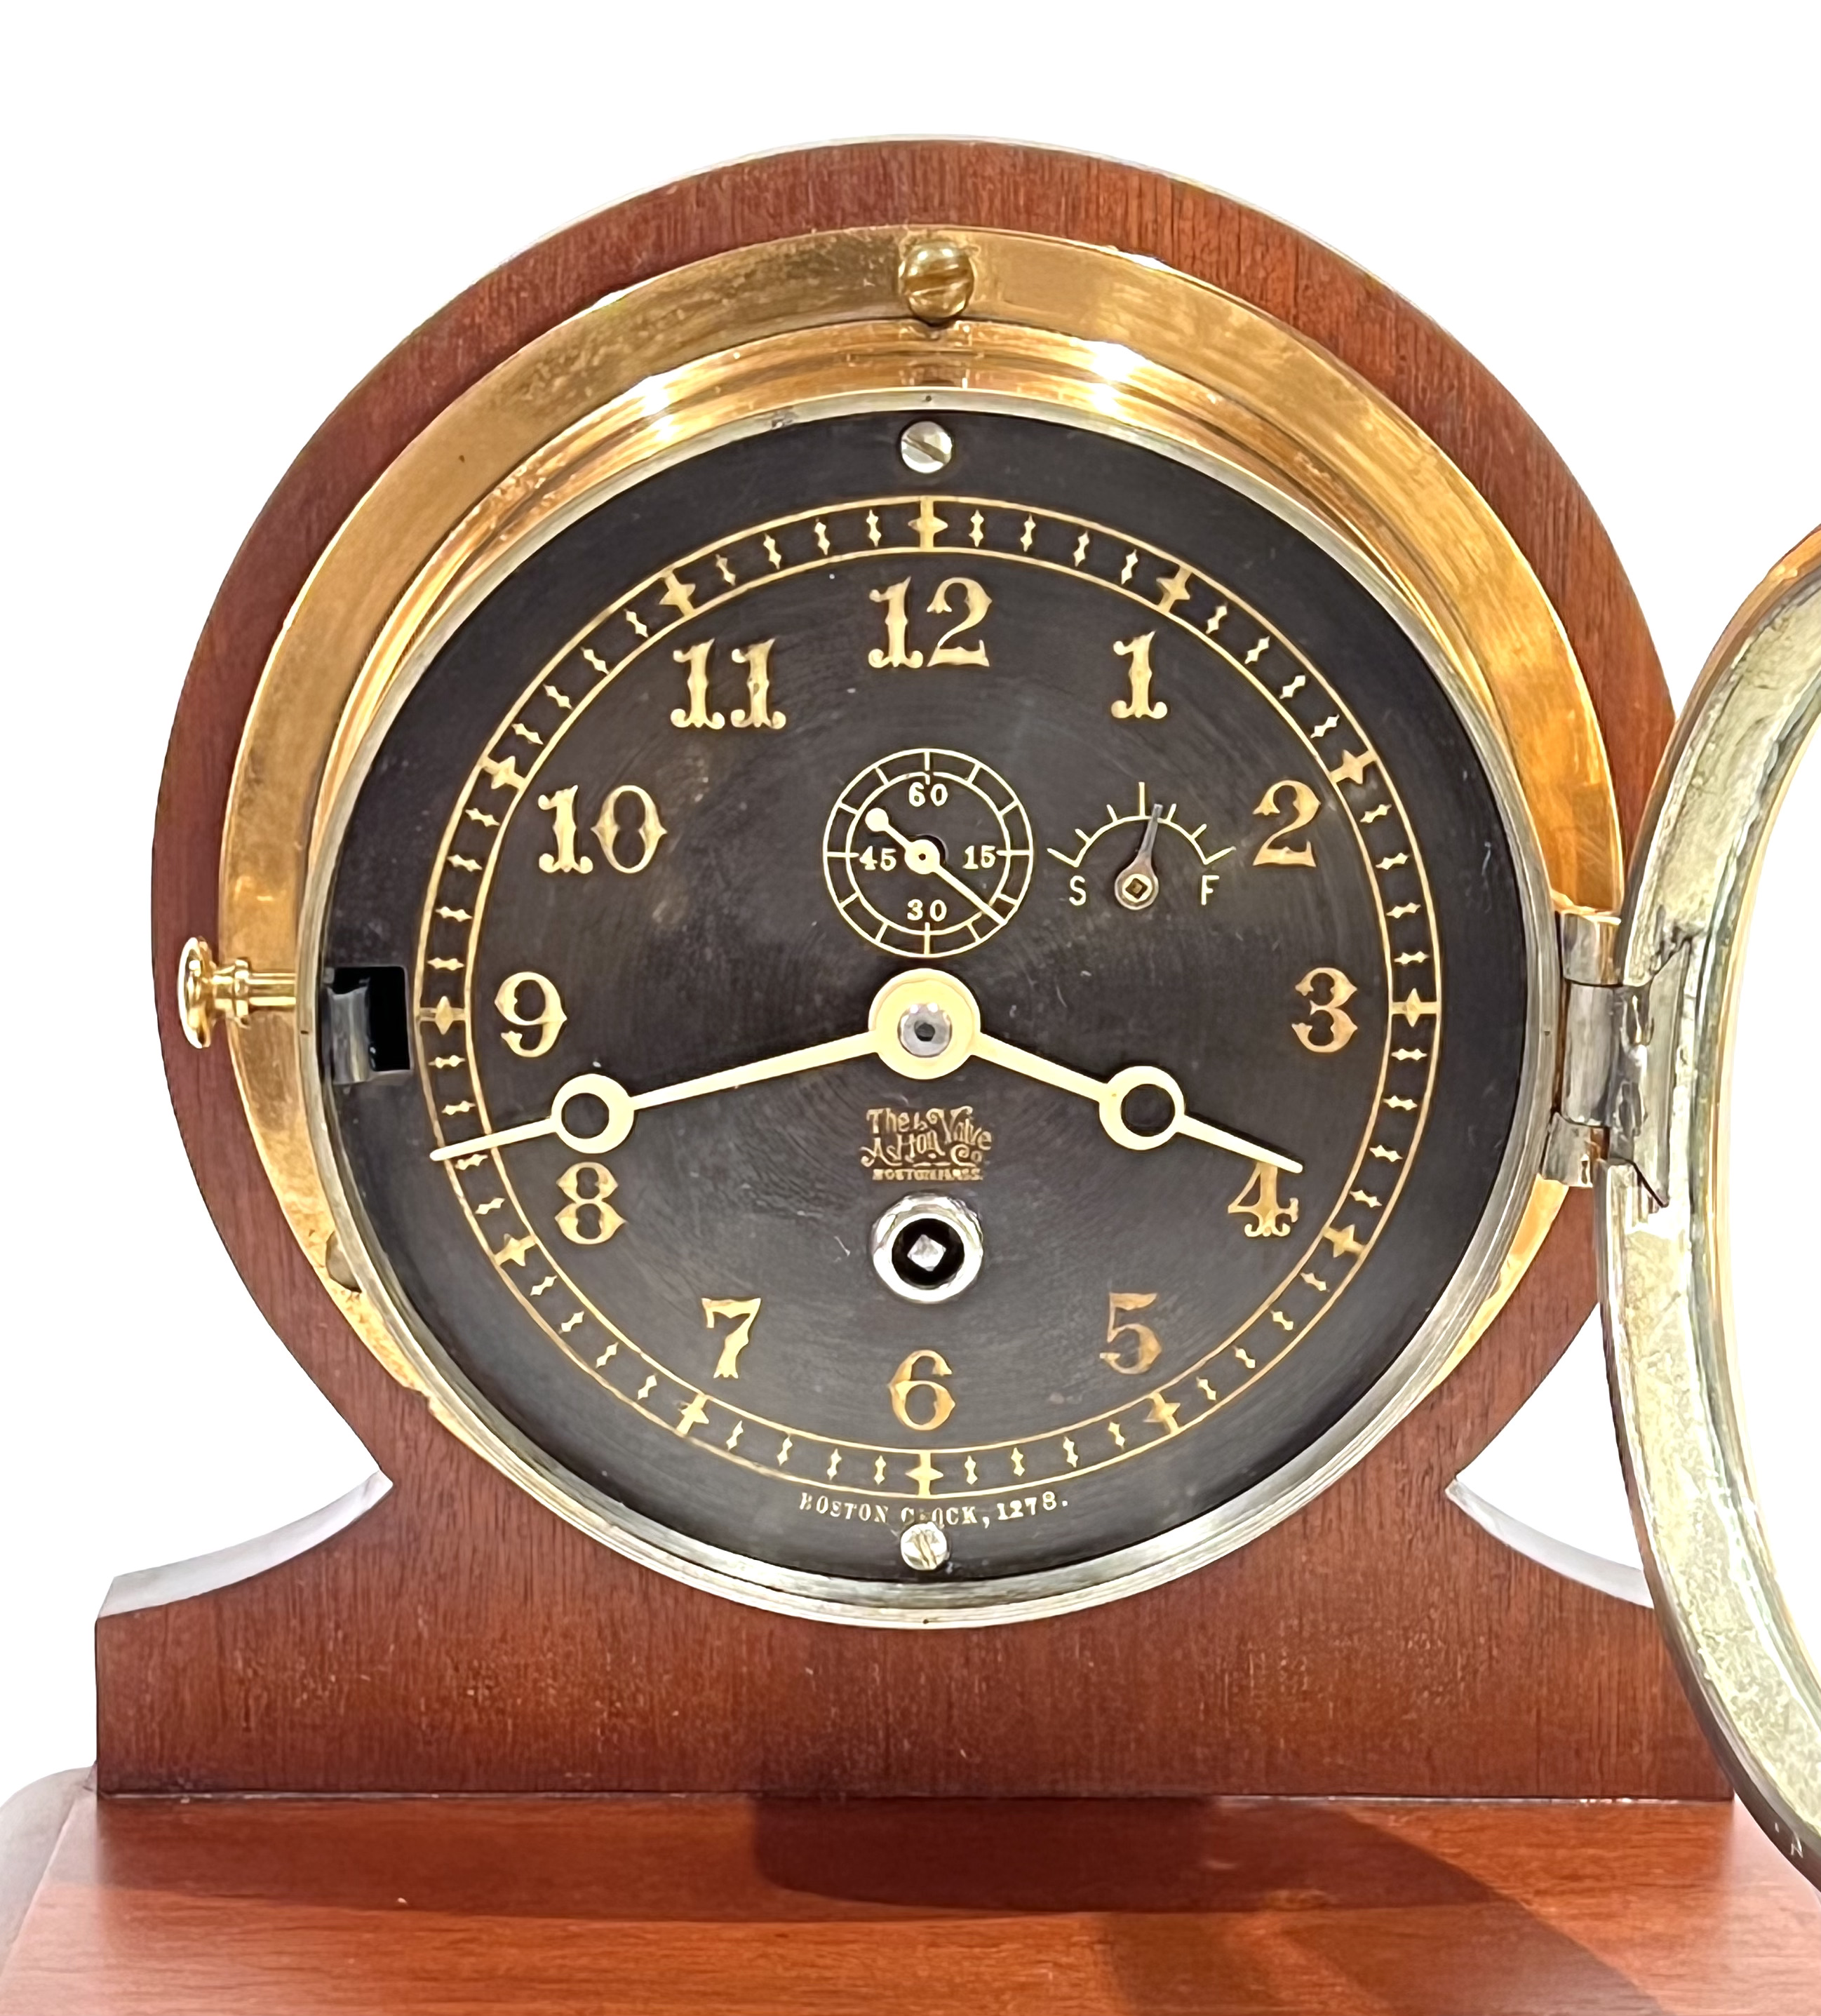 Chelsea Clock Co. 5 inch Black Dial Marine Clock for Ashton Valve Co.